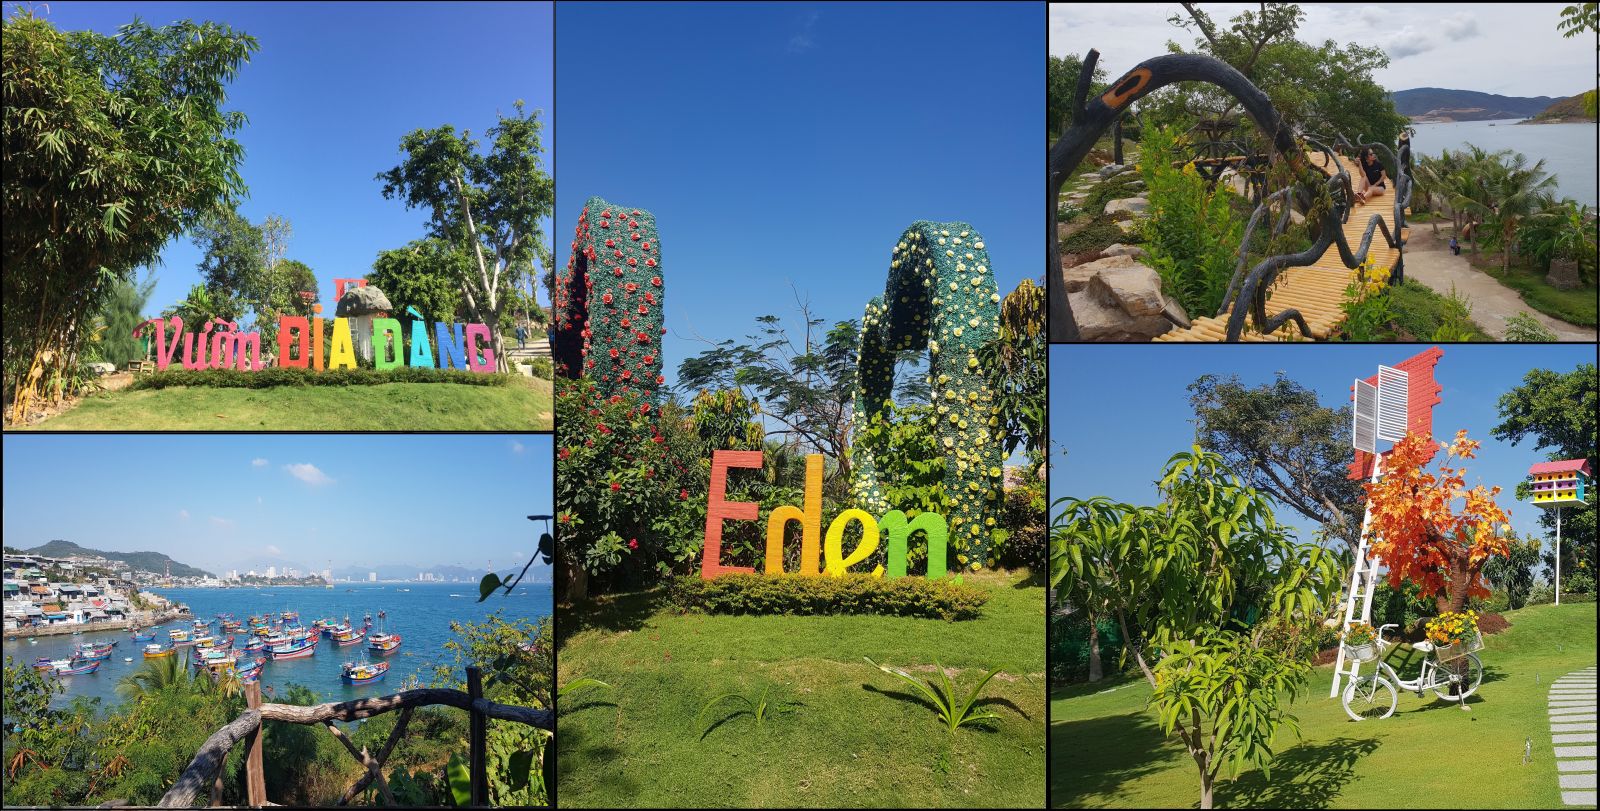 Khu du lịch Sỏi Island - điểm đến check-in thú vị hút khách du lịch Nha Trang - Ảnh 3.